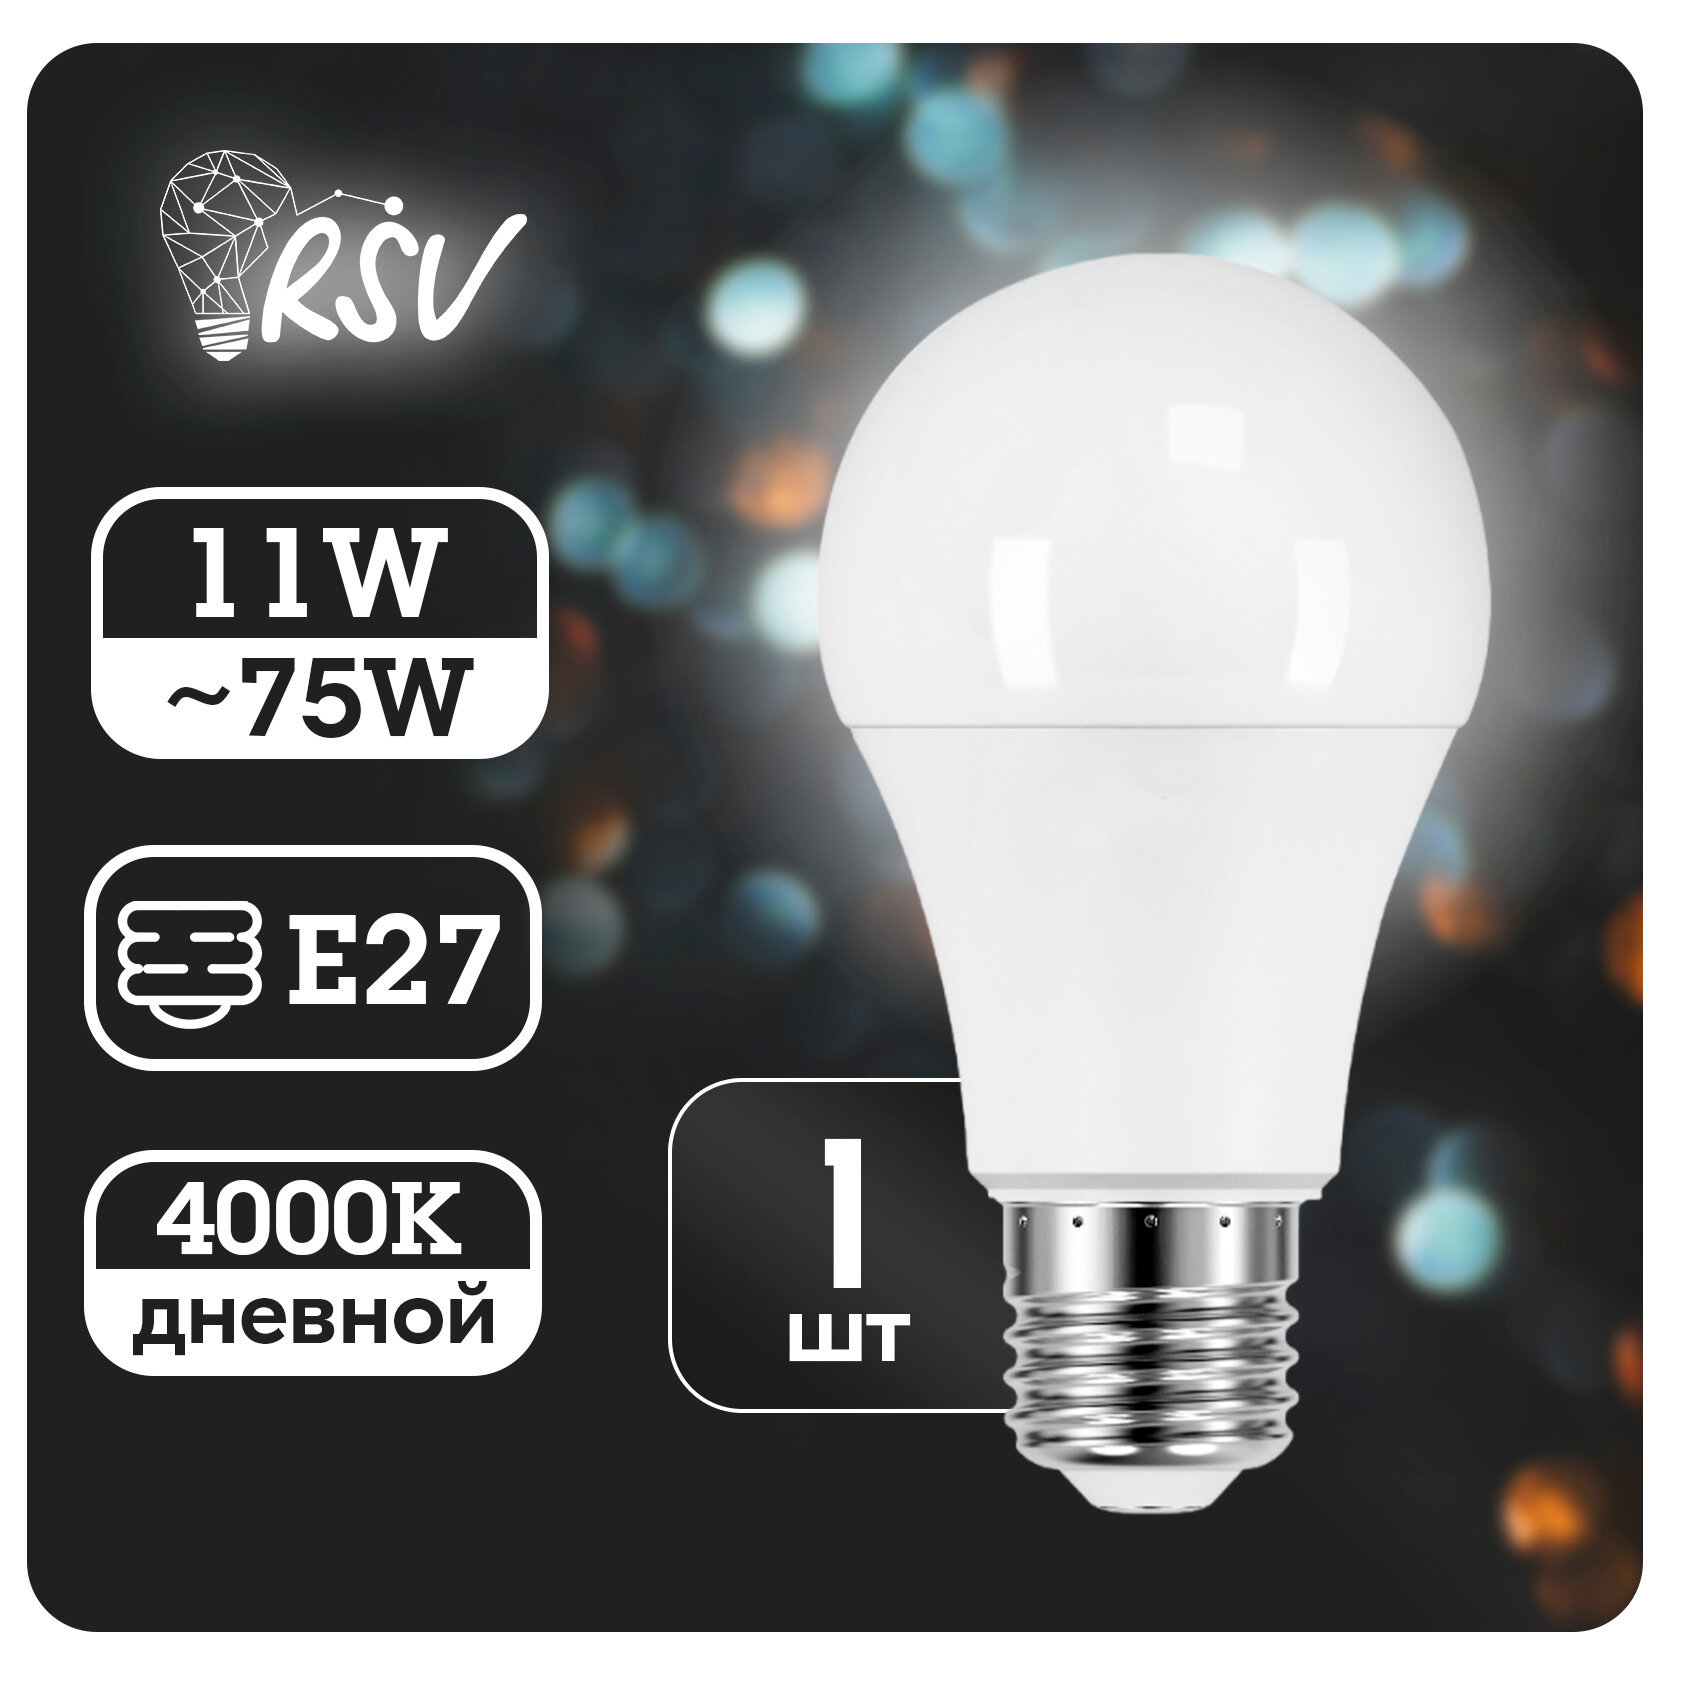 Лампа светодиодная RSV 11 Вт (75 Вт) 4000K, дневной свет